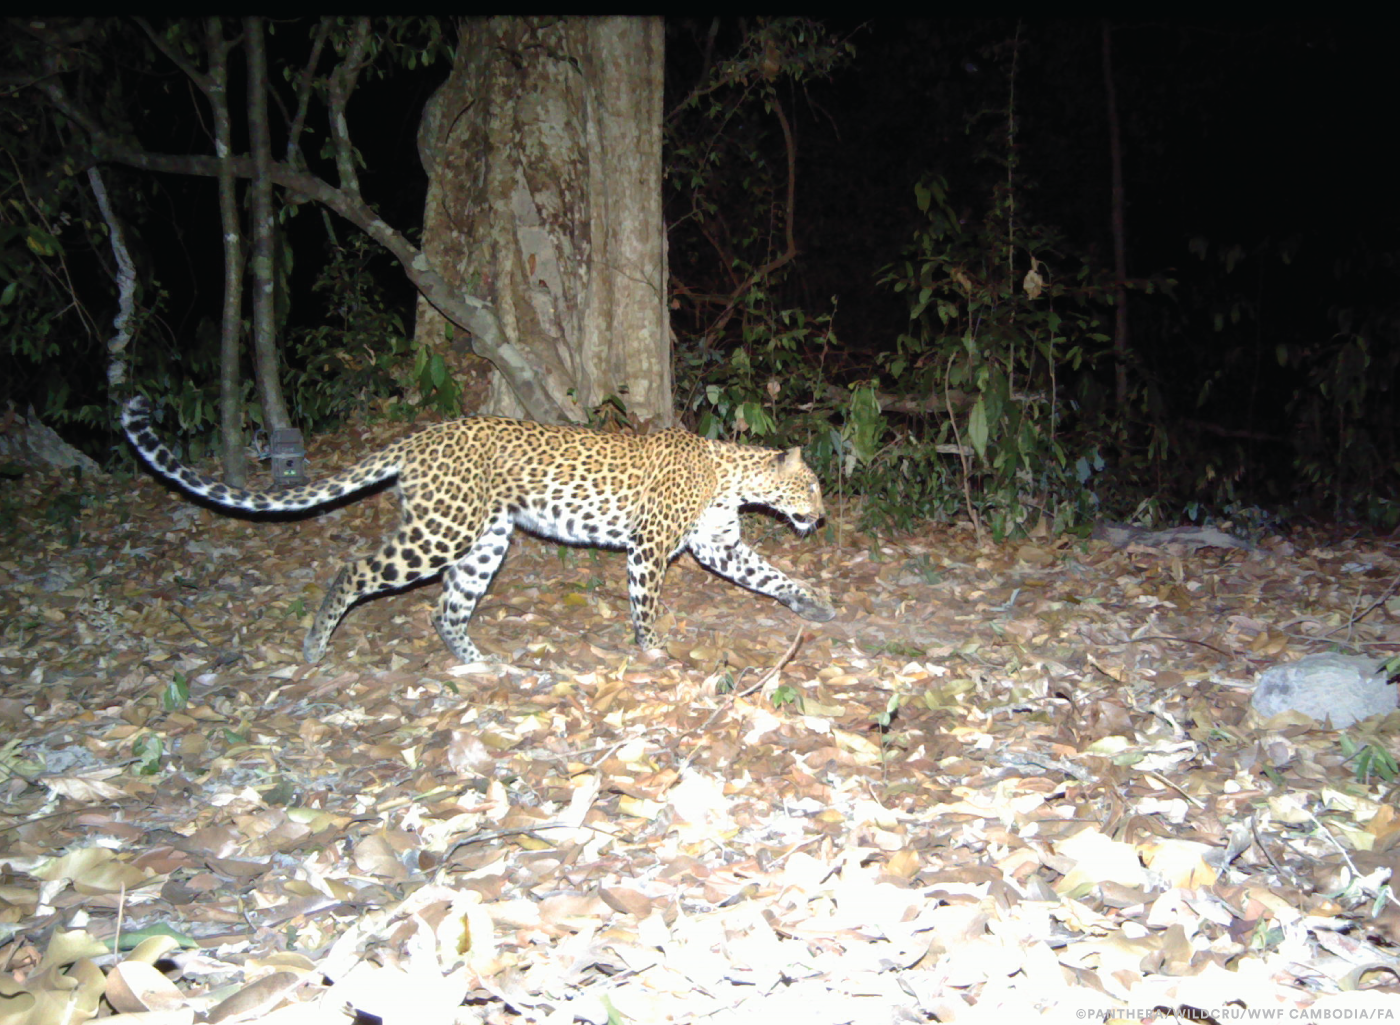 Leopardo-da-indochina em imagem capturada por armadilha fotográfica no Camboja.  (Foto: Cortesia / Susan Weller (Panthera))